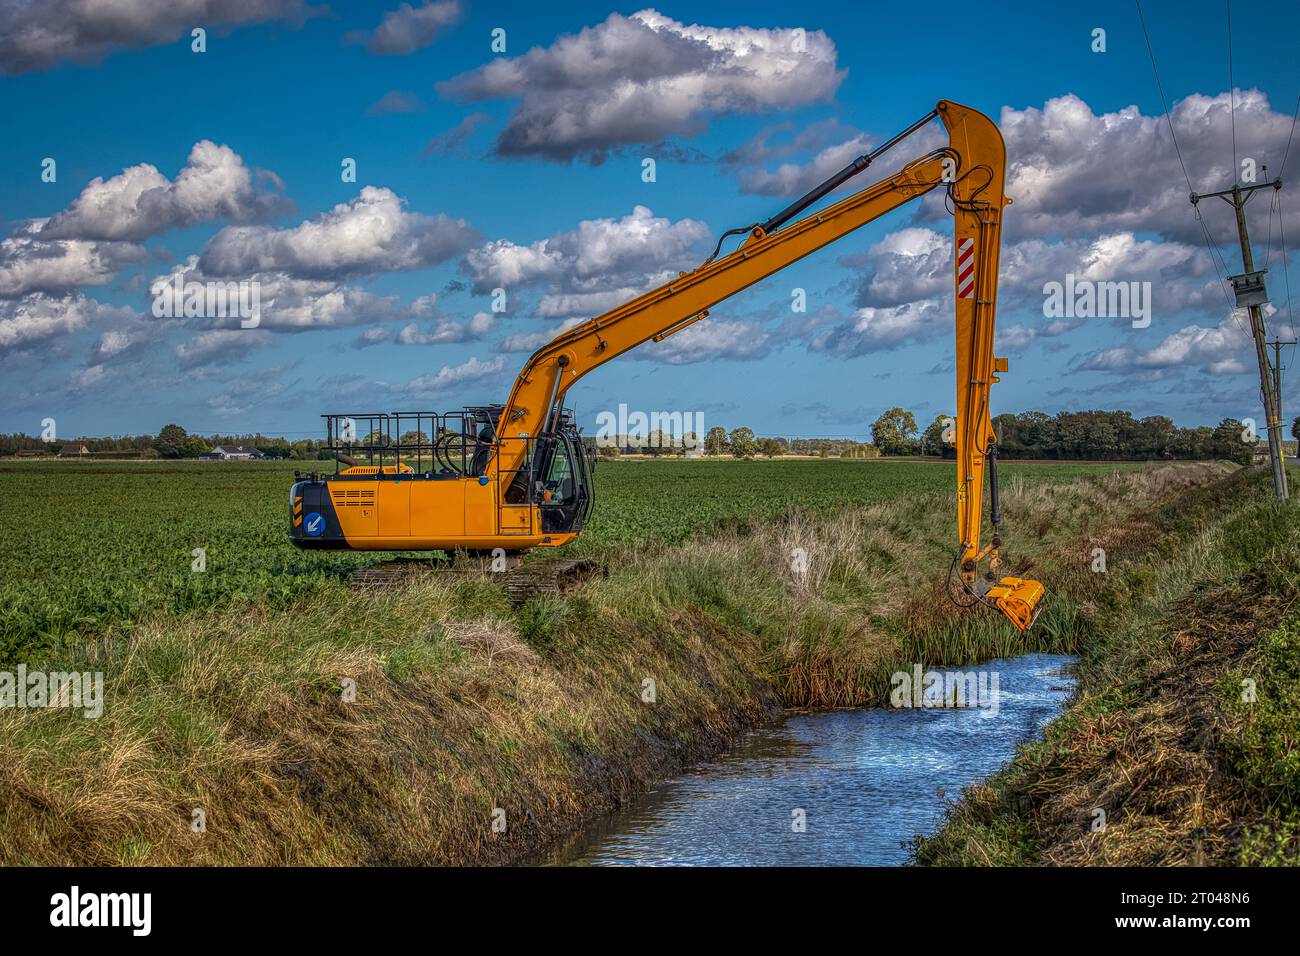 Reed-Mähbagger zur Reinigung von Entwässerungsgräben in den Ebenen Gebieten des ländlichen Lincolnshire. Arbeiten unter herbstlich blauem Himmel unter idealen Bedingungen. Stockfoto